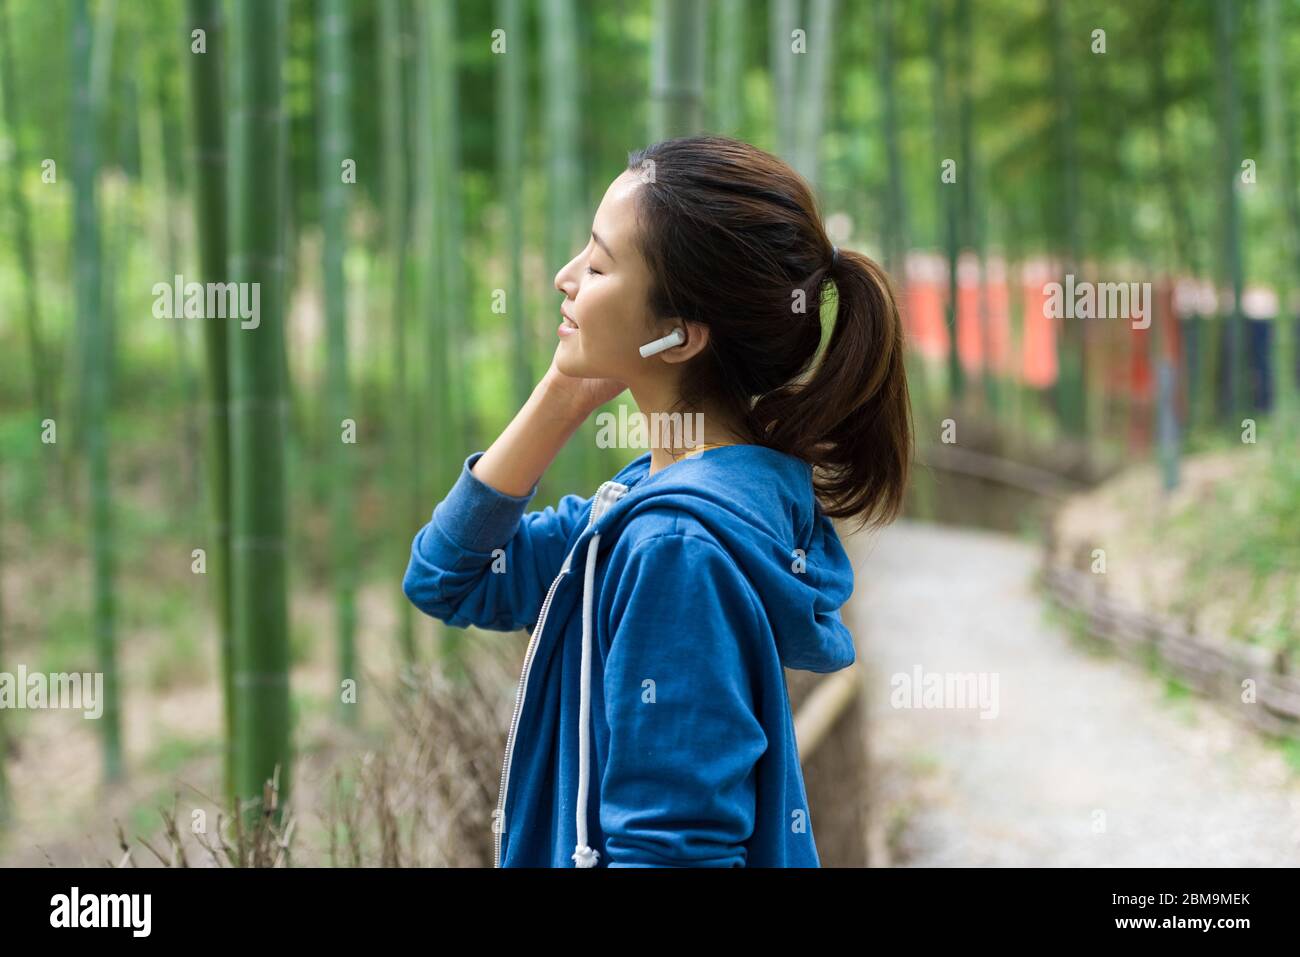 Una joven asiática camina y descansa en un bosque de bambú Foto de stock